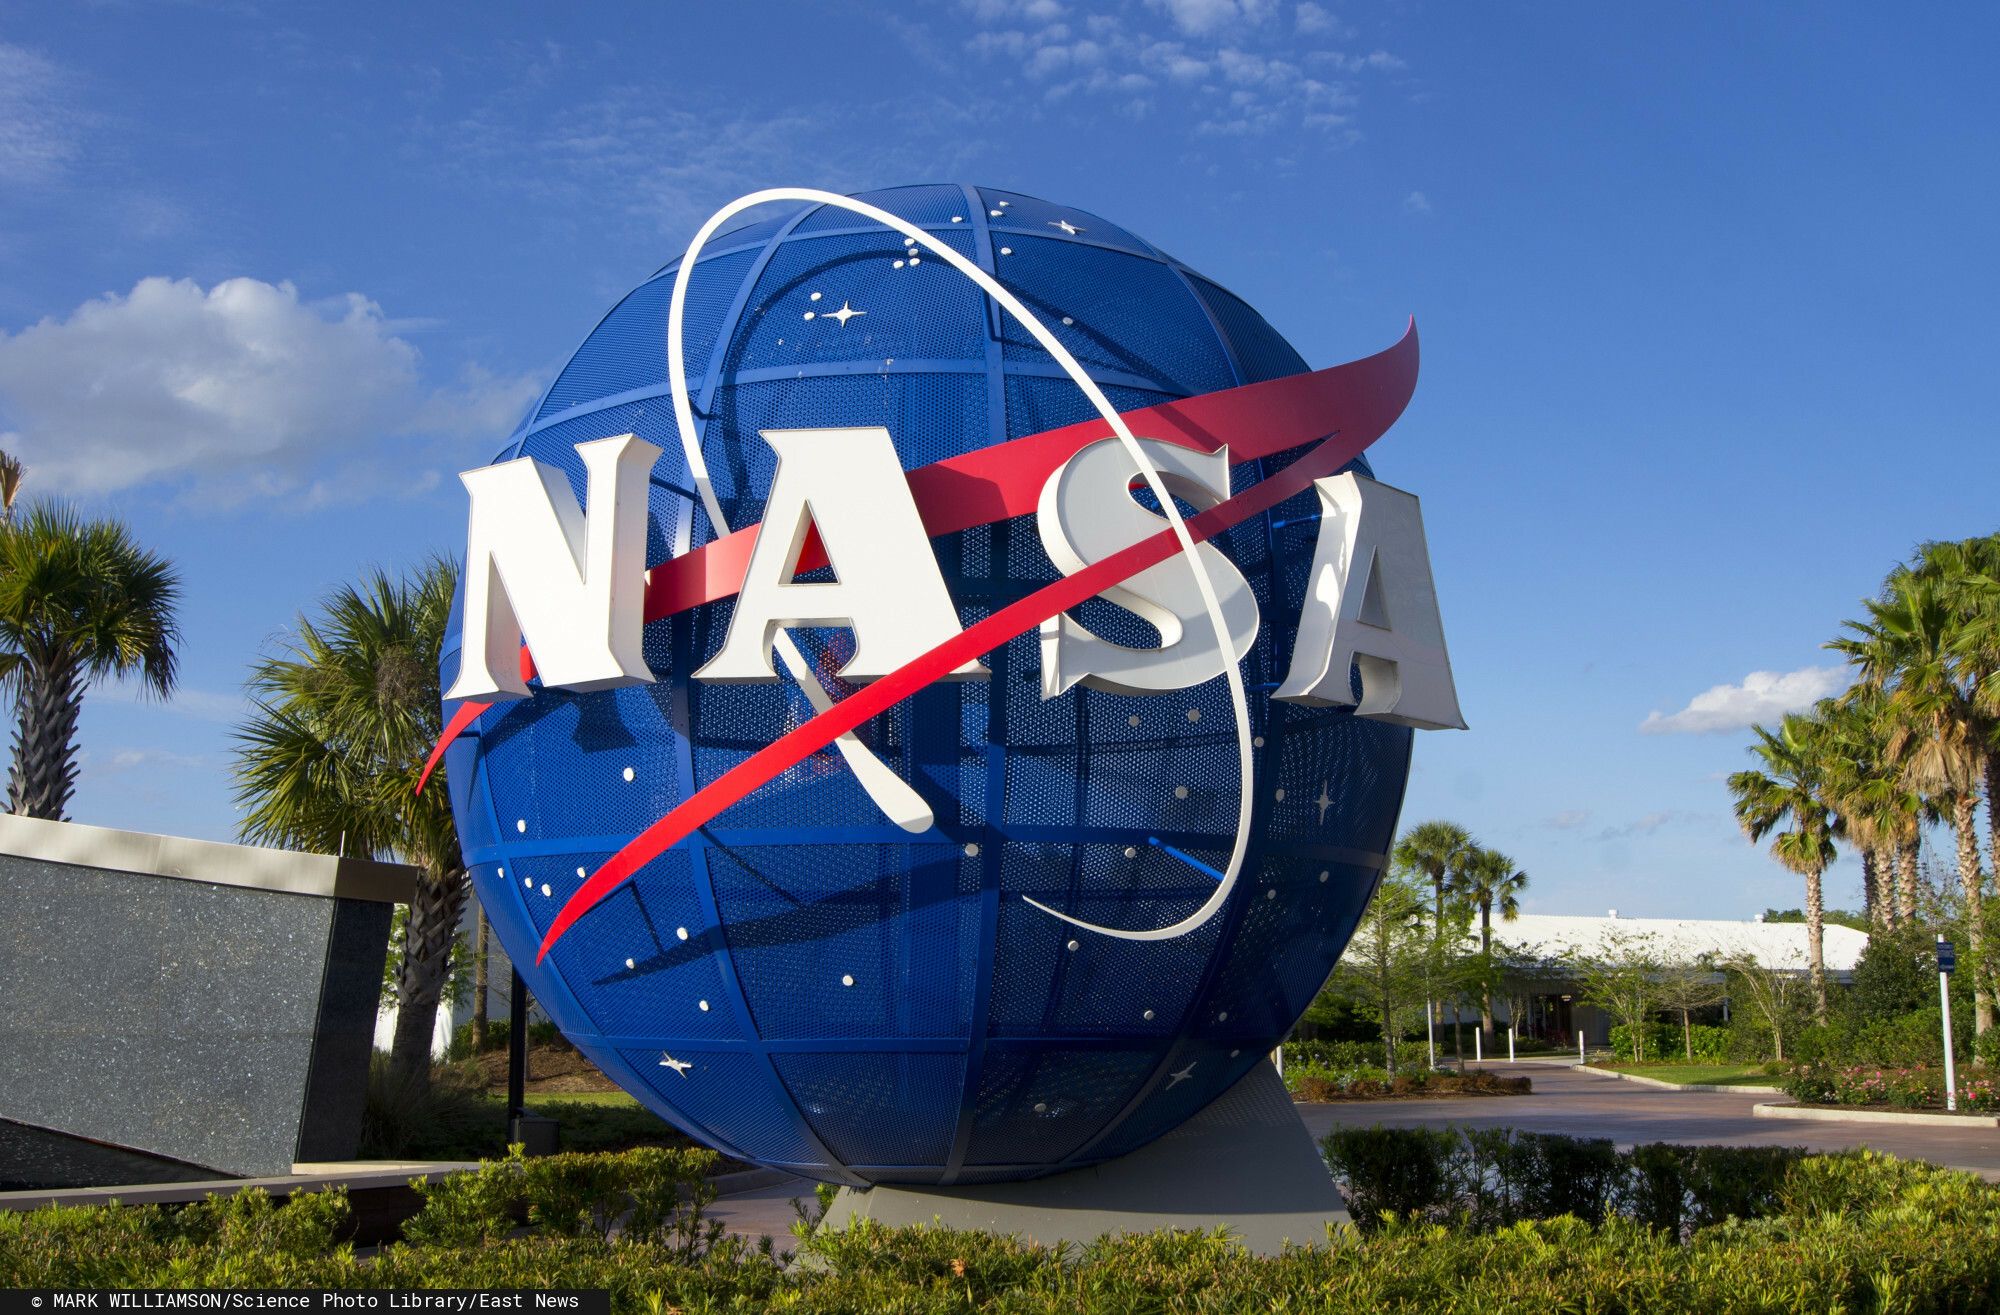 Znak w kształcie kuli przedstawiający trójwymiarową reprezentację oryginalnego logo NASA